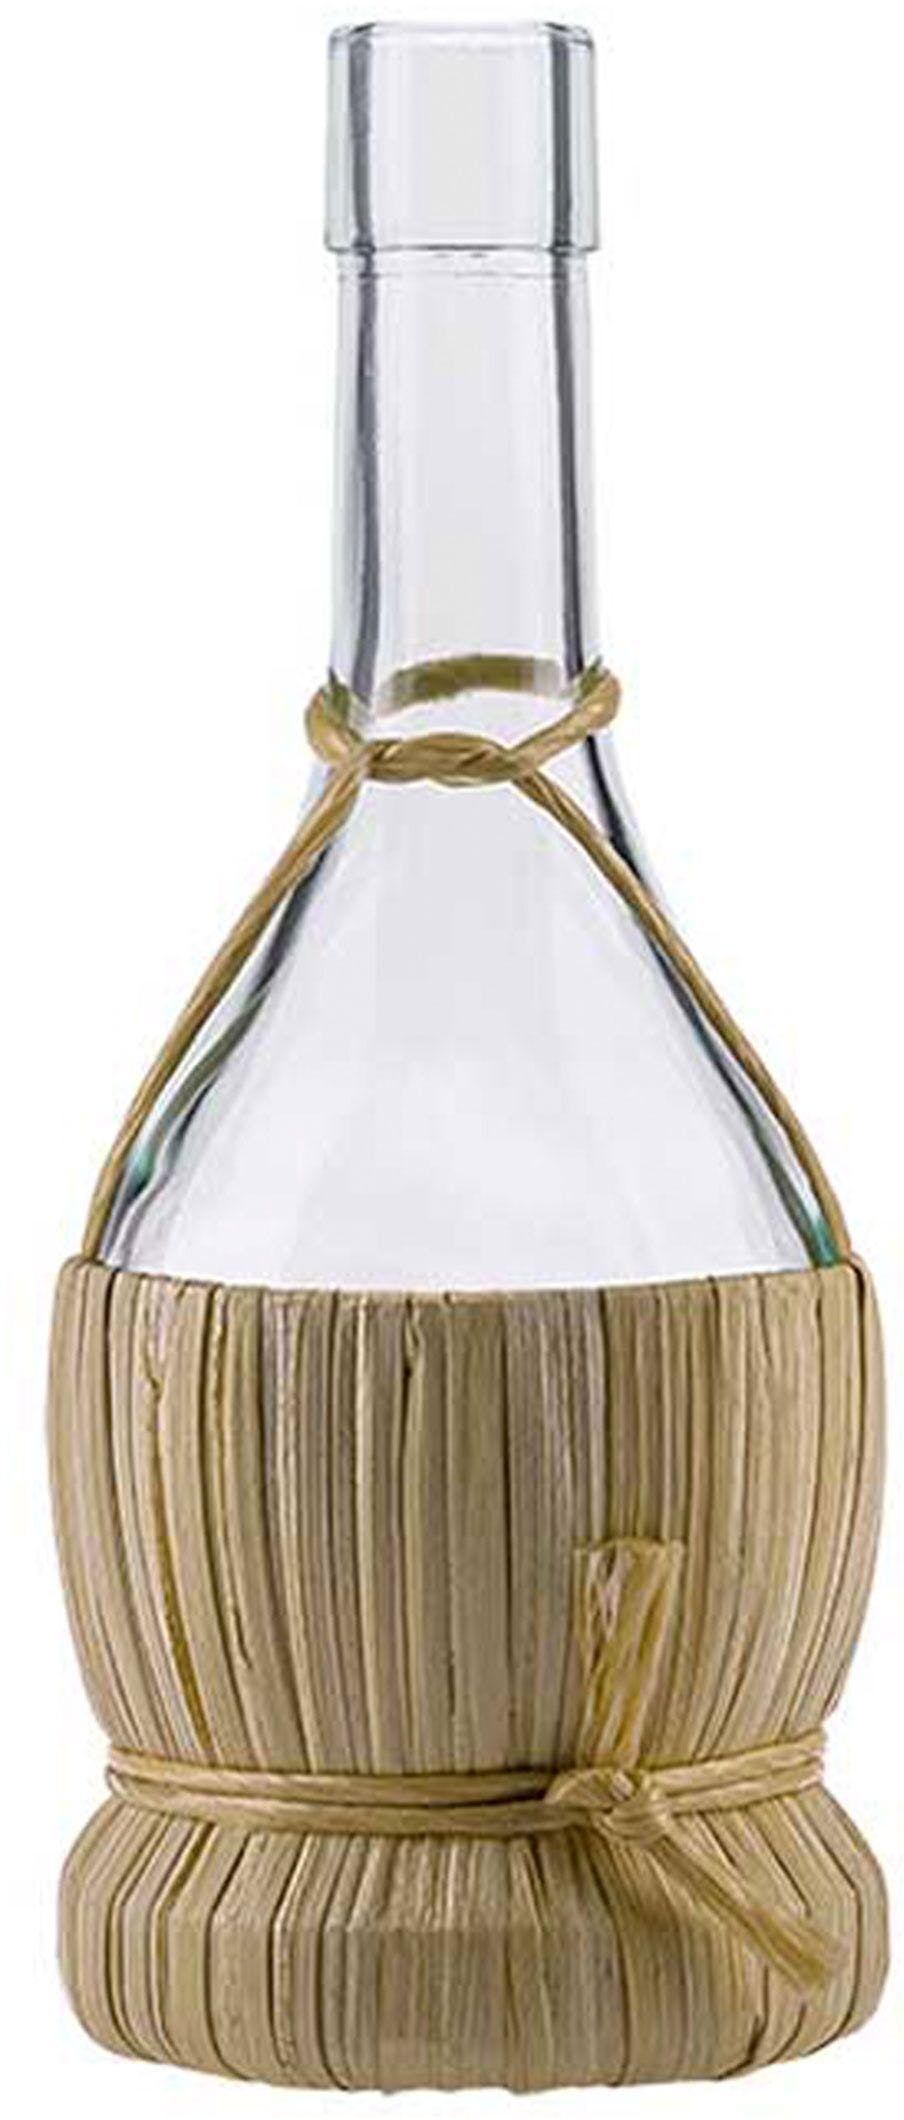 Botella FIASCO  250 ml BG-corcho